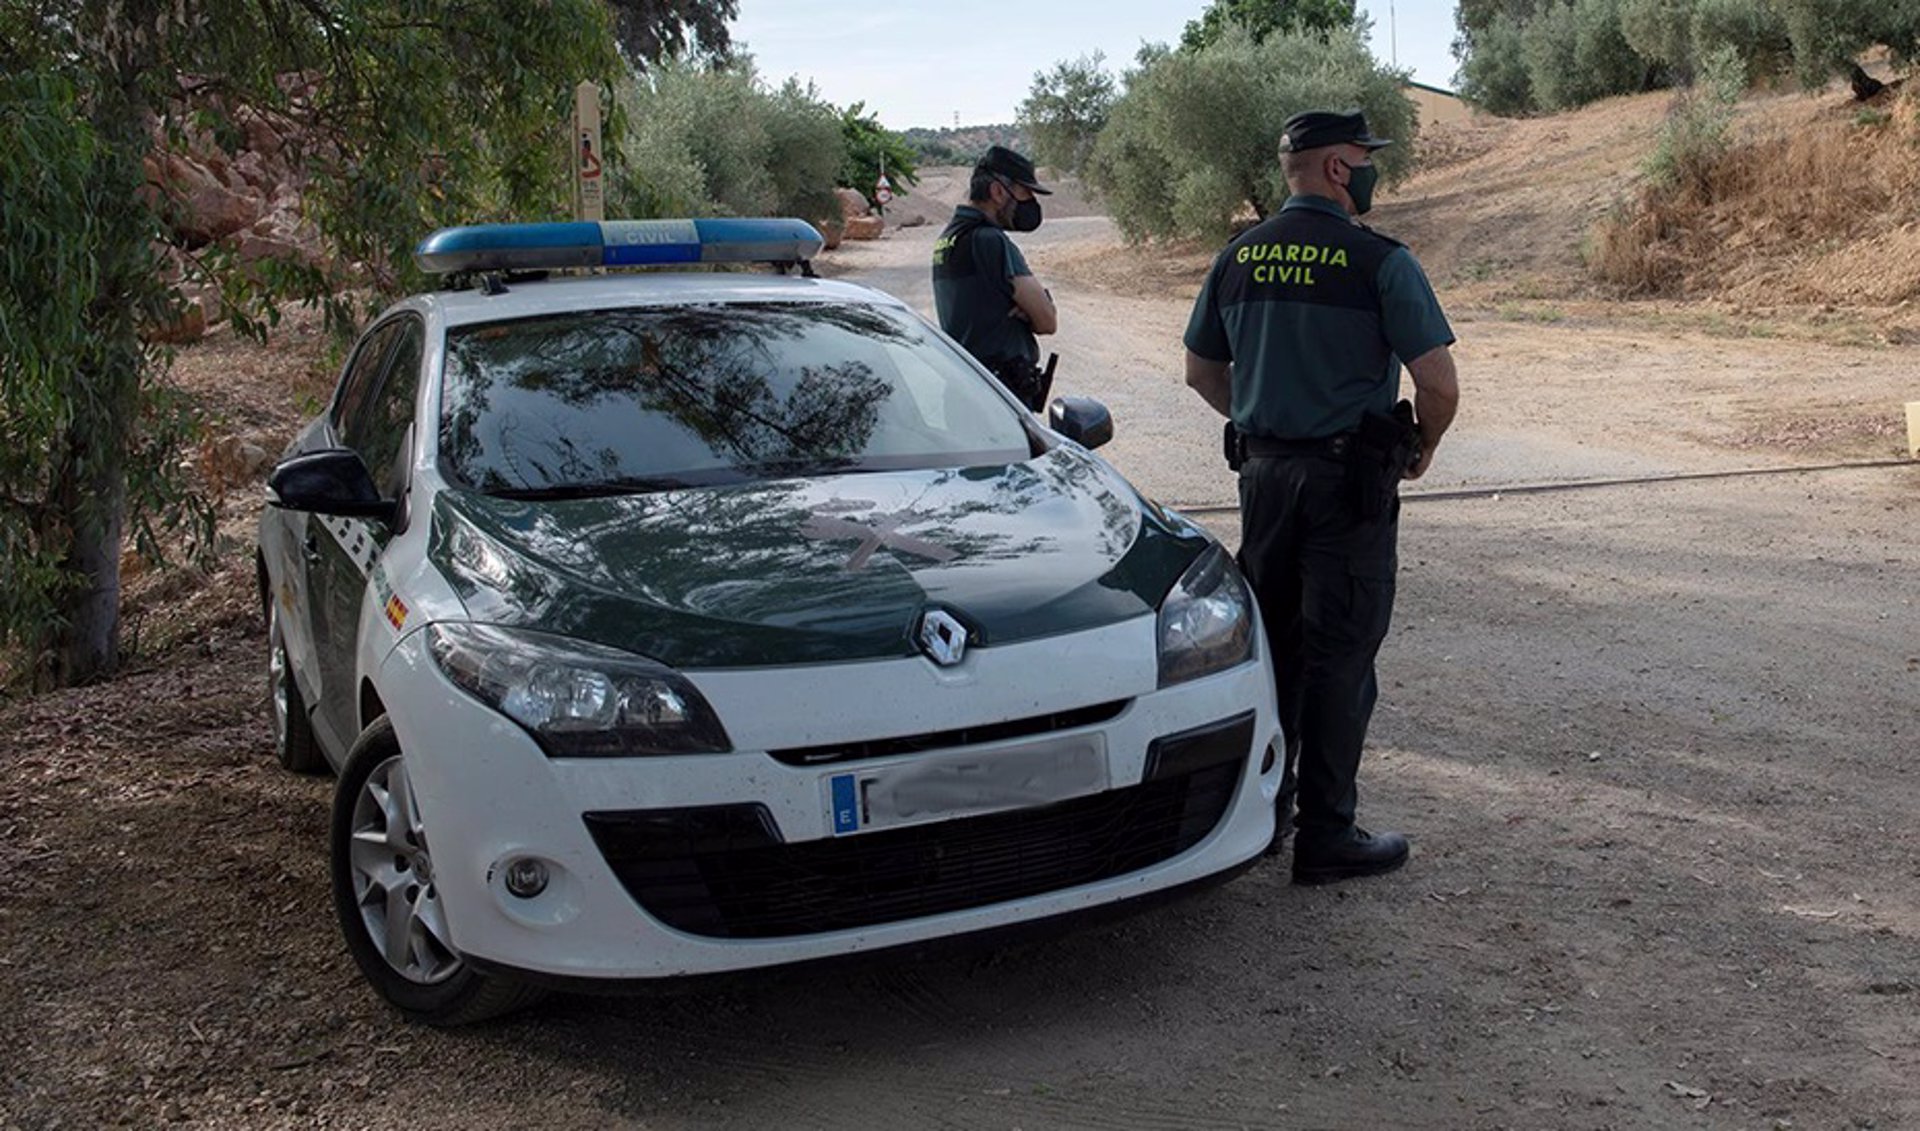 La Guardia Civil ha detenido a 357 personas en requisitoria durante el año 2021